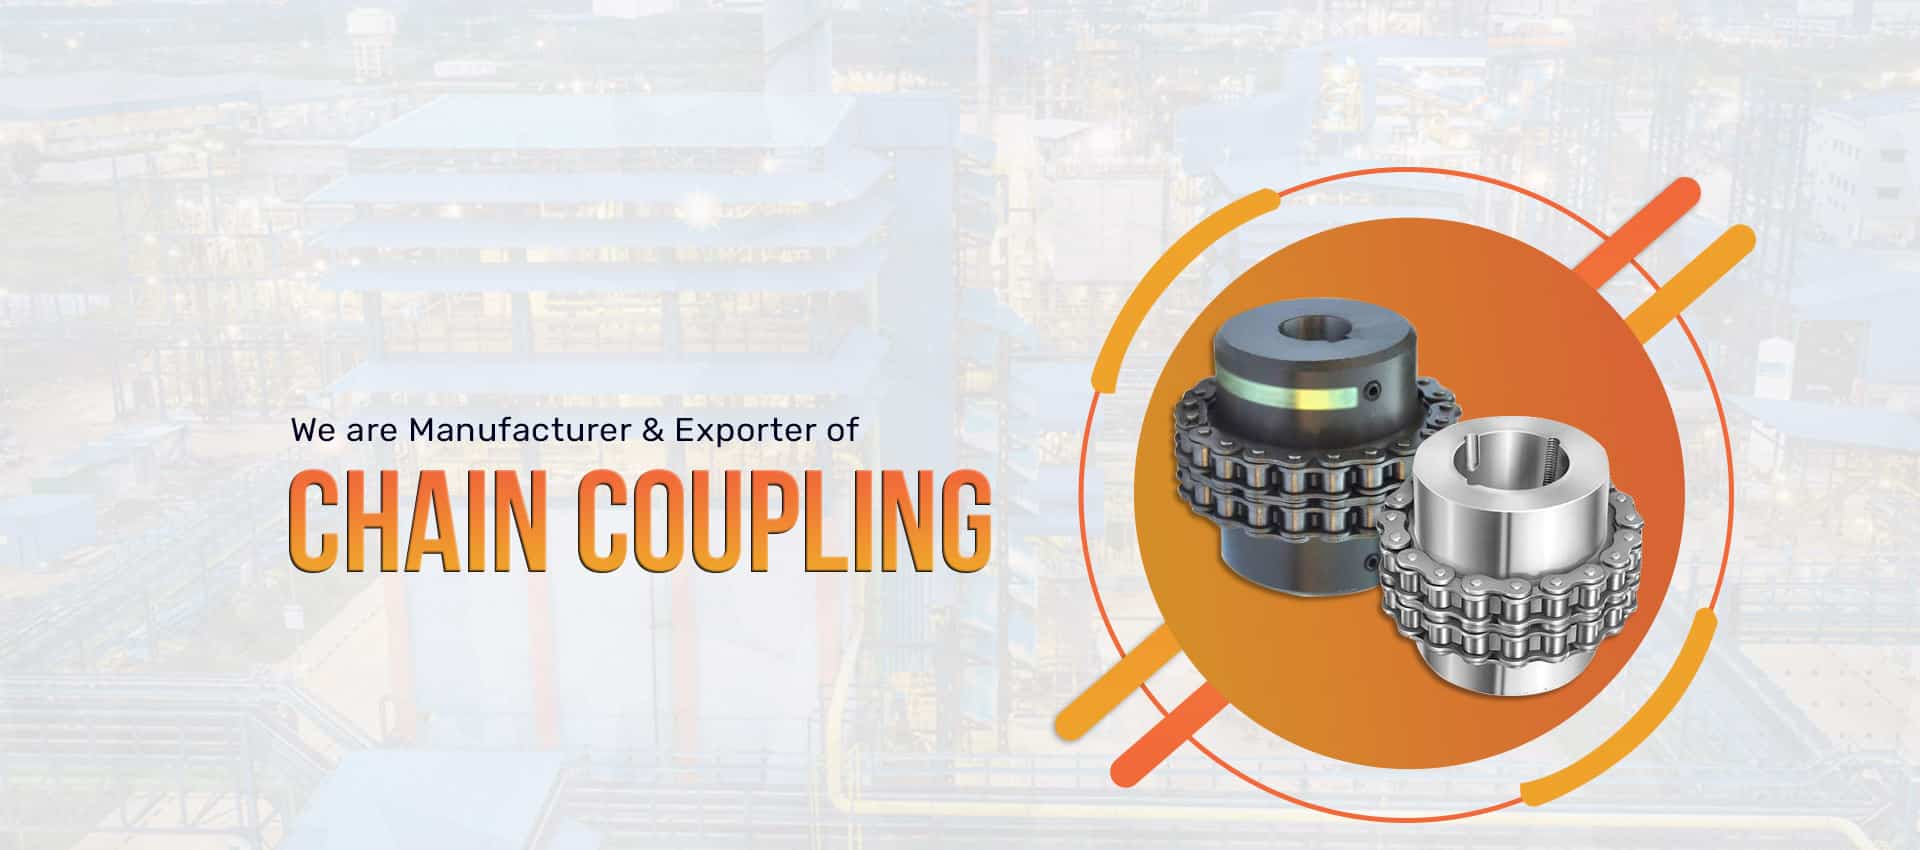 Manufacturer & Exporter of chain coupling in Patna, Bihar